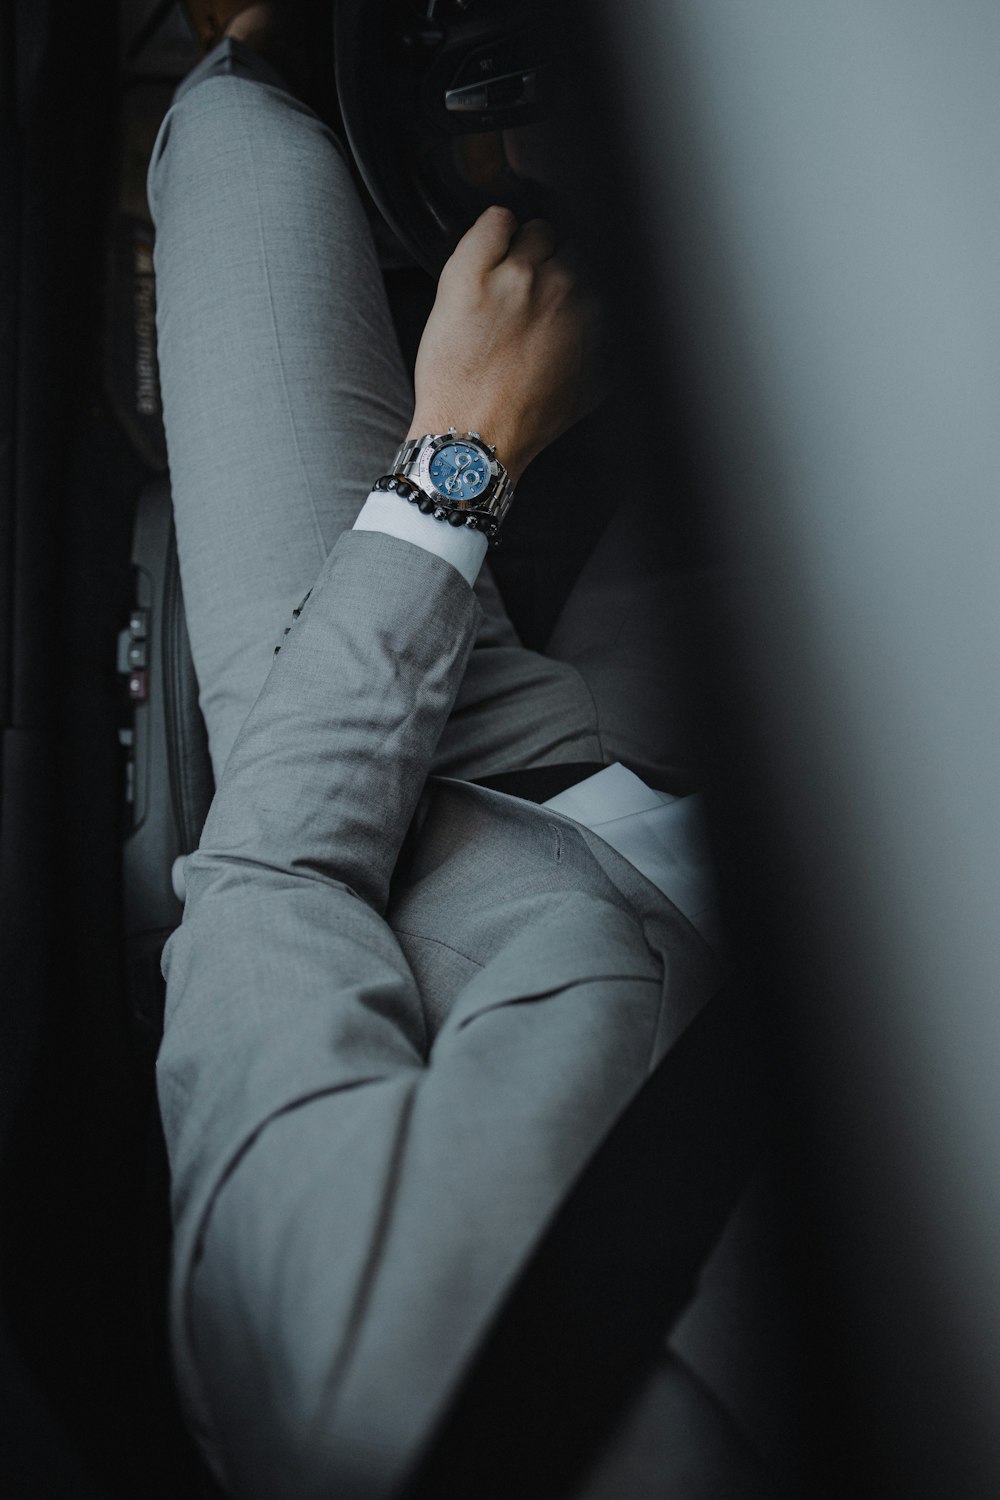 Person in grauer Hose mit silbernem Gliederarmband runde analoge Uhr